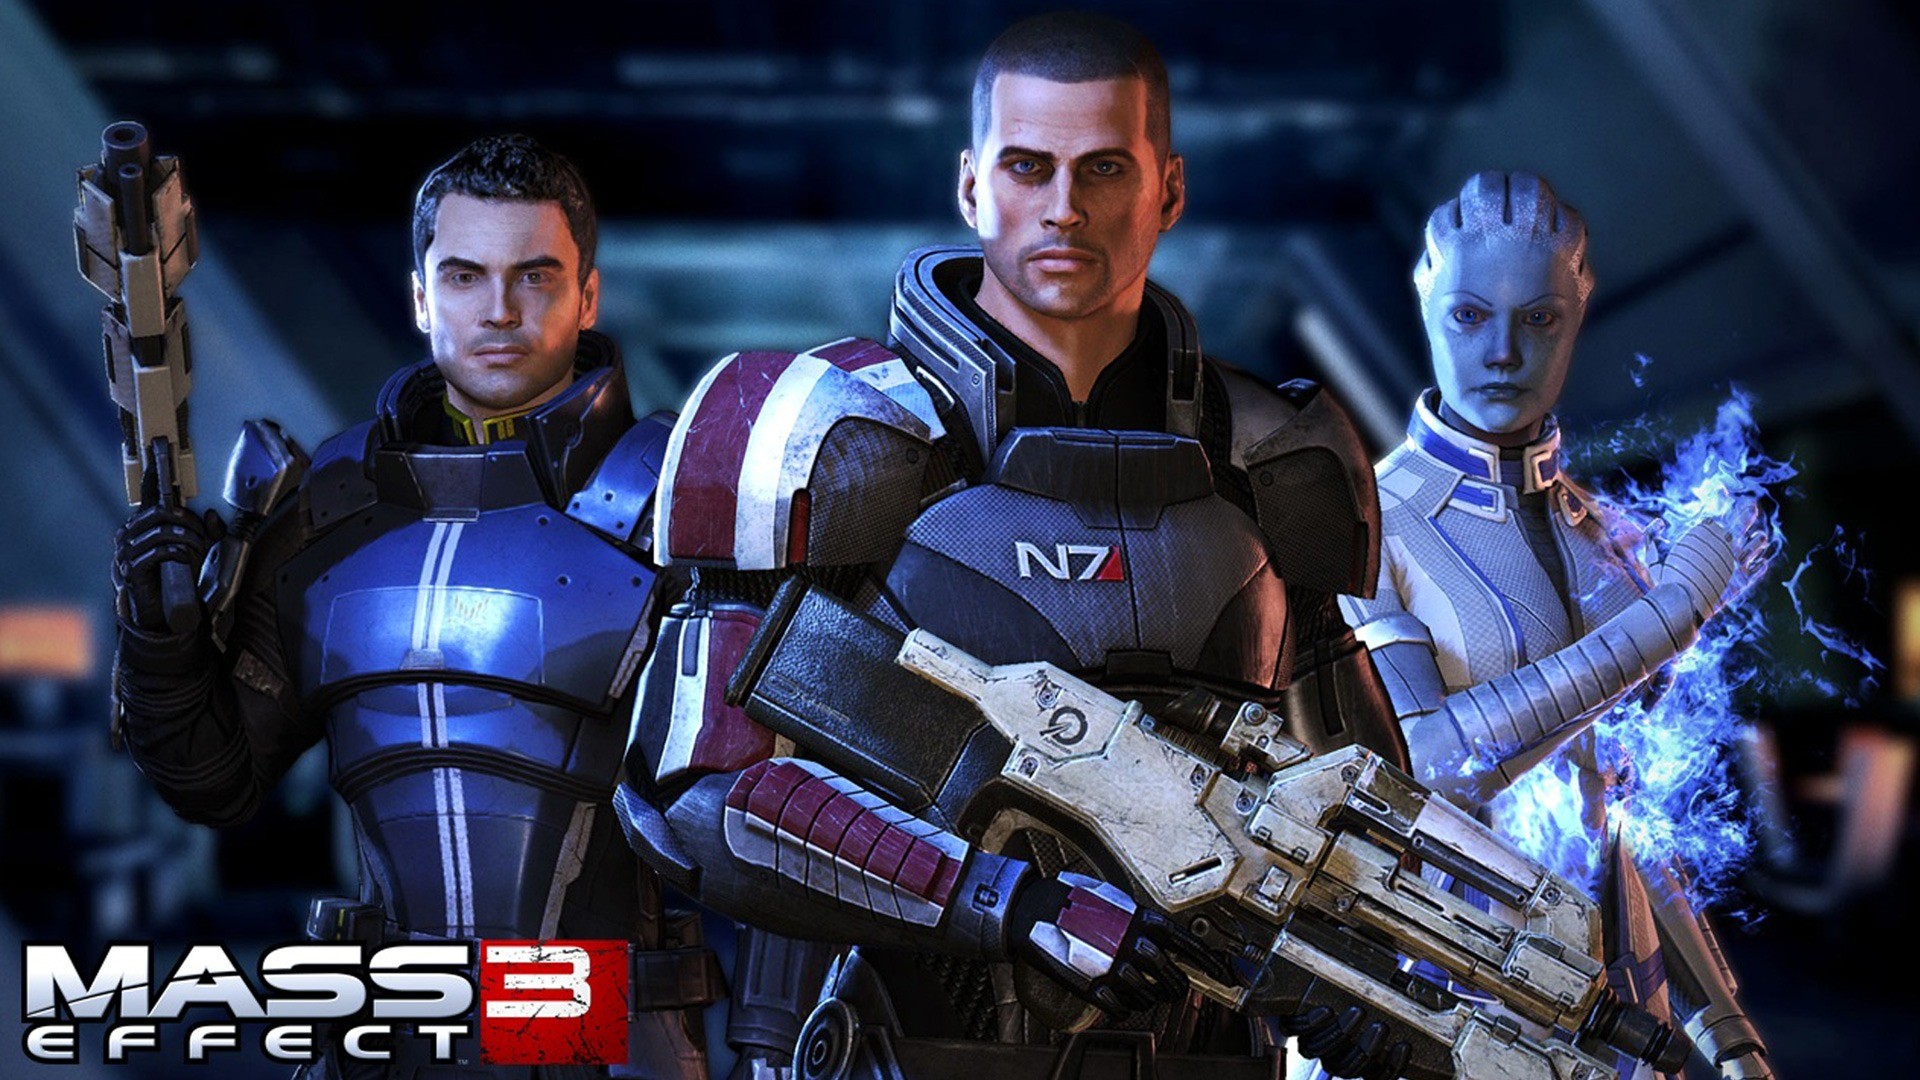 1920x1080 Mass Effect 3 Image. Mass Effect 3 Wallpaper HD ...